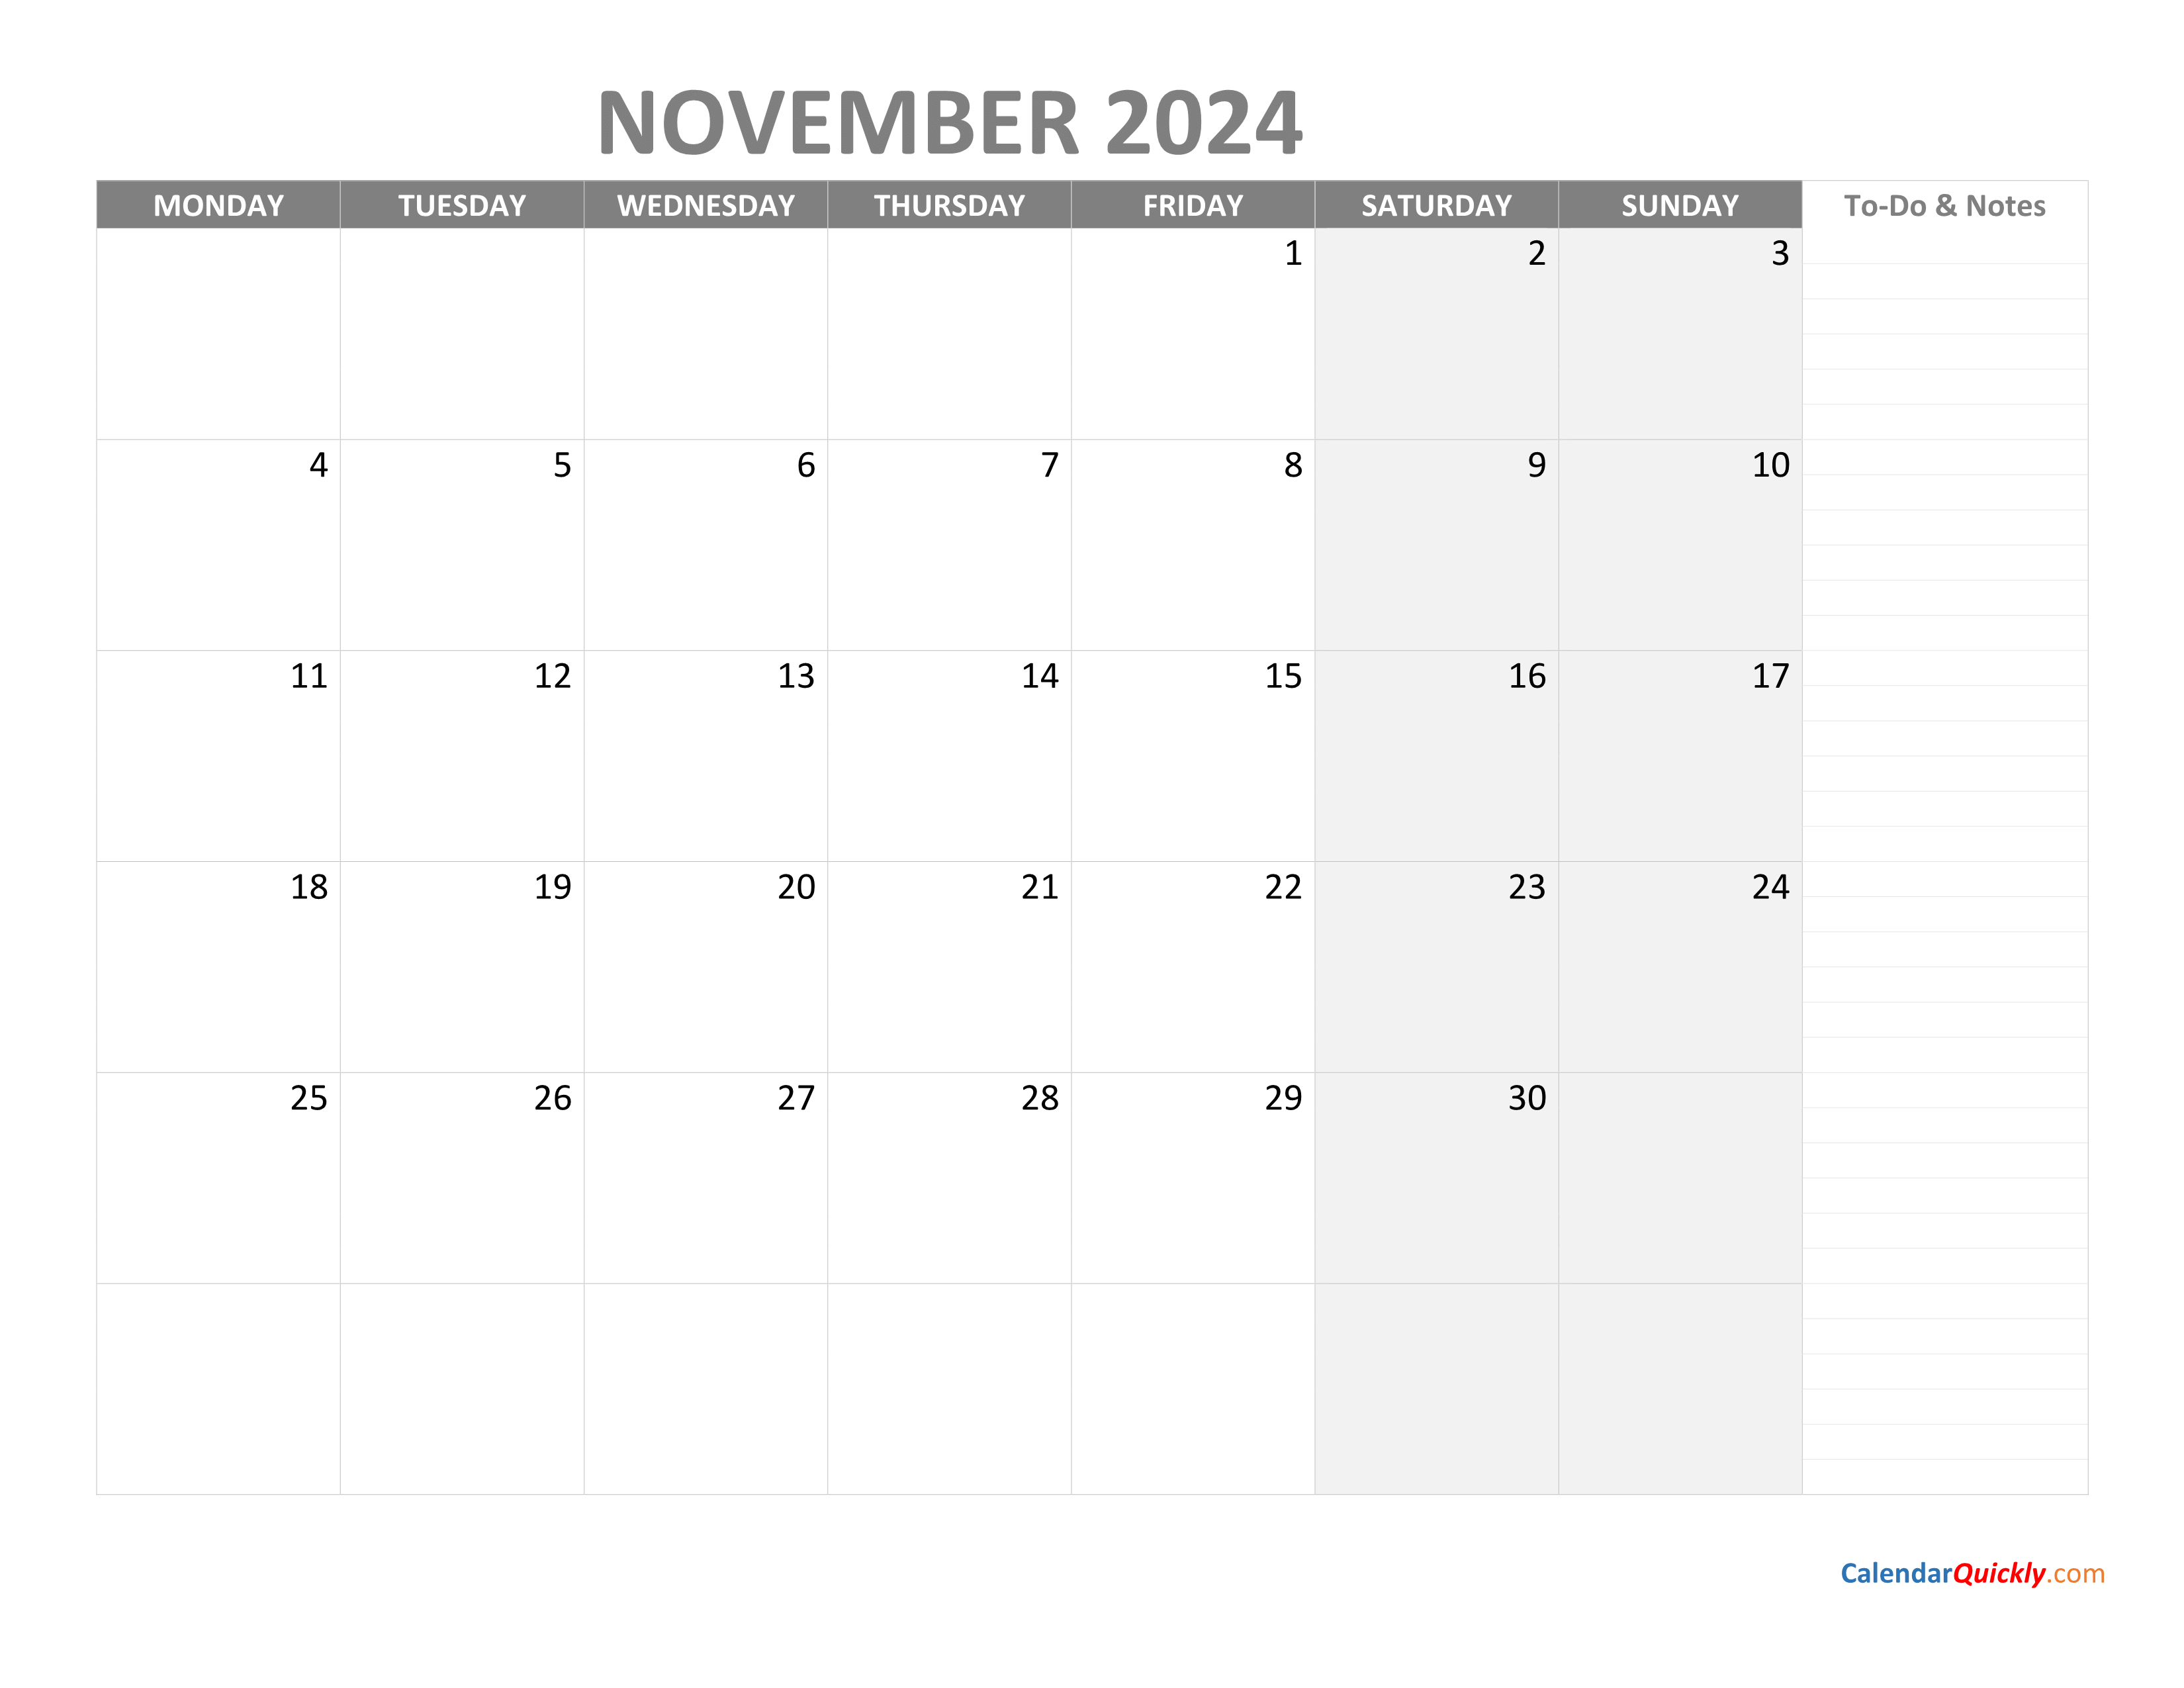 Monthly 2024 Calendar Calendar Quickly Gambaran - Free Printable 2024 Monthly Calendar November